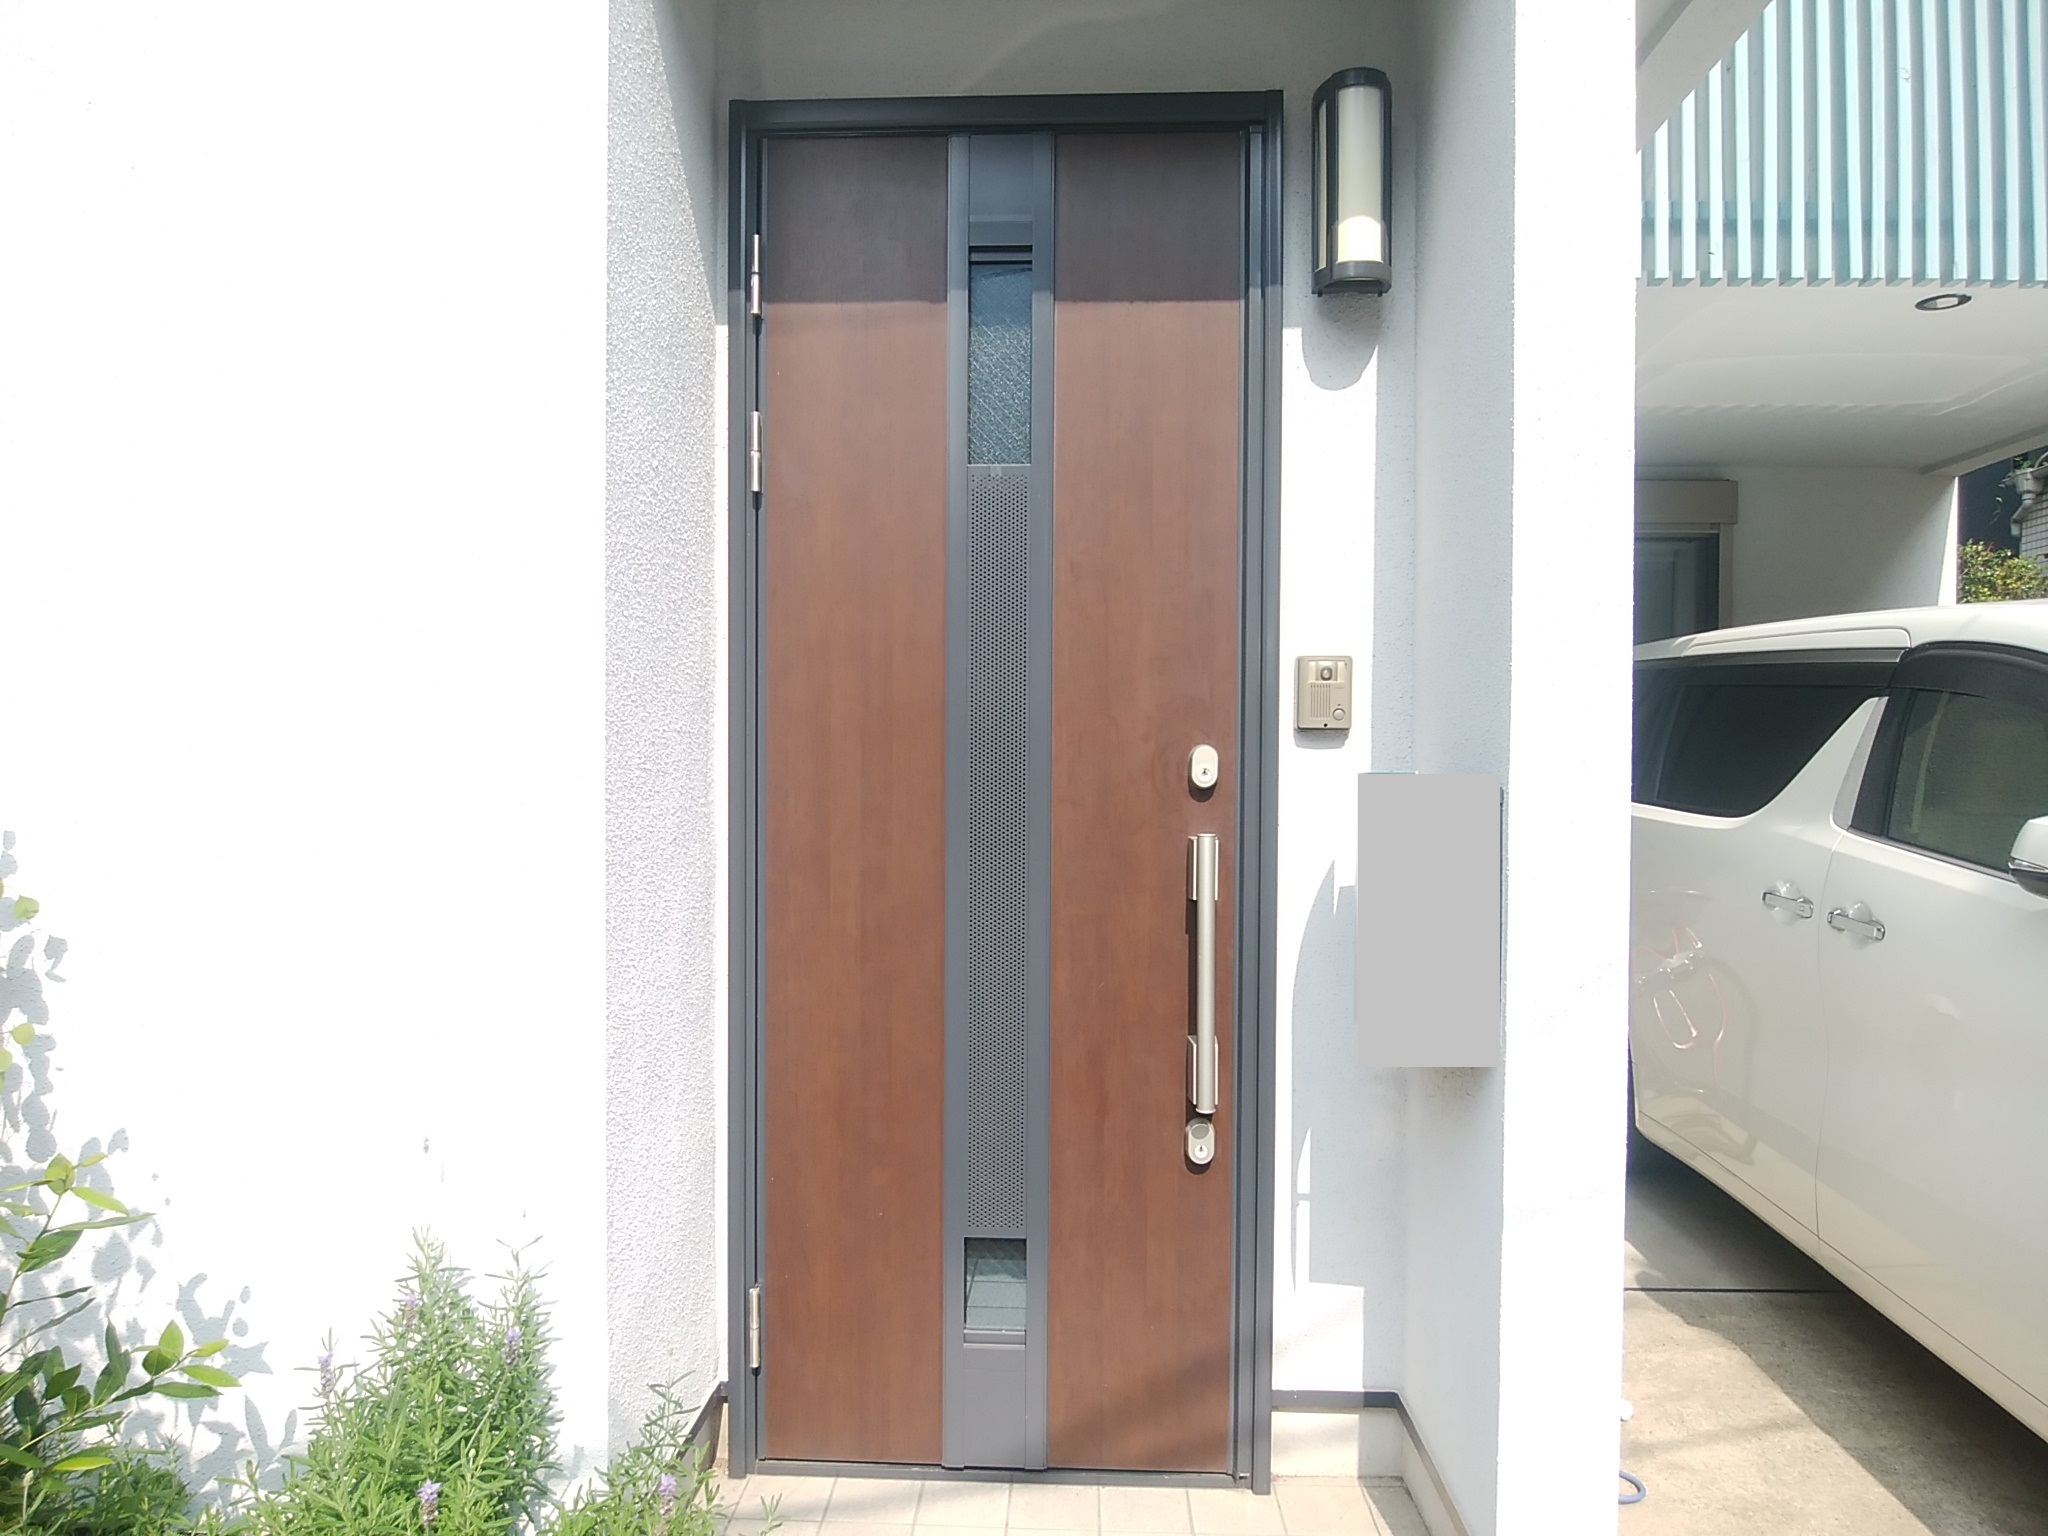 ガラスがないシンプルな断熱タイプの木目調ドア Lixilリシェントm17型 玄関ドアのリフォームなら玄関ドアマイスターへお任せください